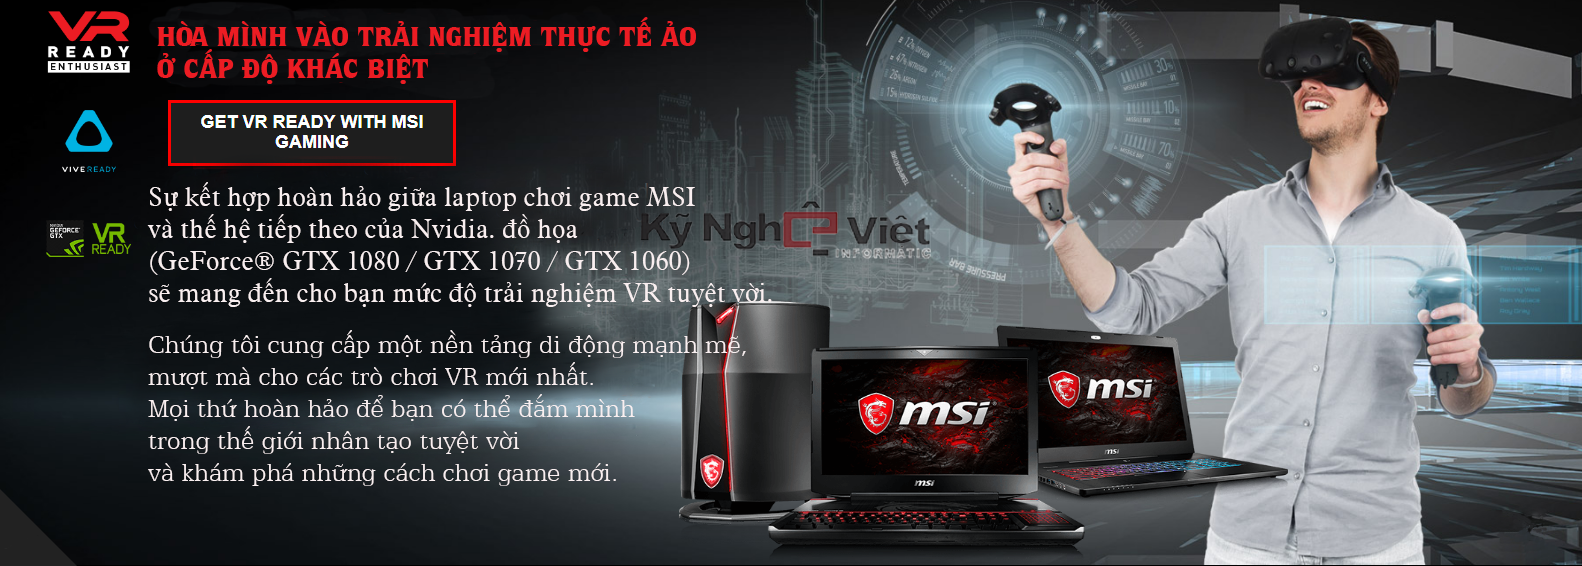 MSI GE72MVR-7RG Core i7 7700HQ 16GB 17.3 inch Full HD Windows 10